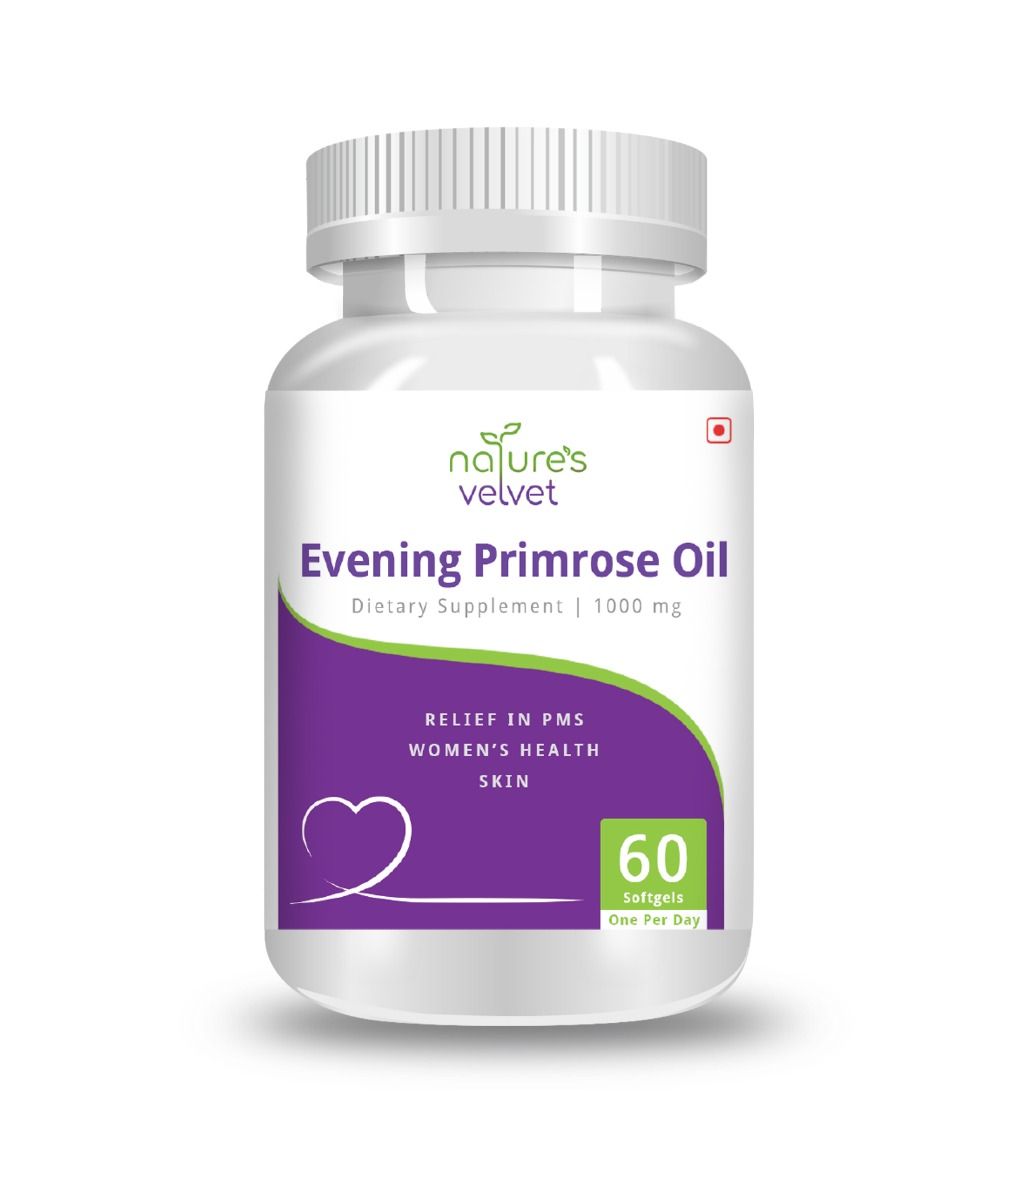 Nature's Velvet Evening Primrose Oil 1000 mg, 60 Softgels, Pack of 1 